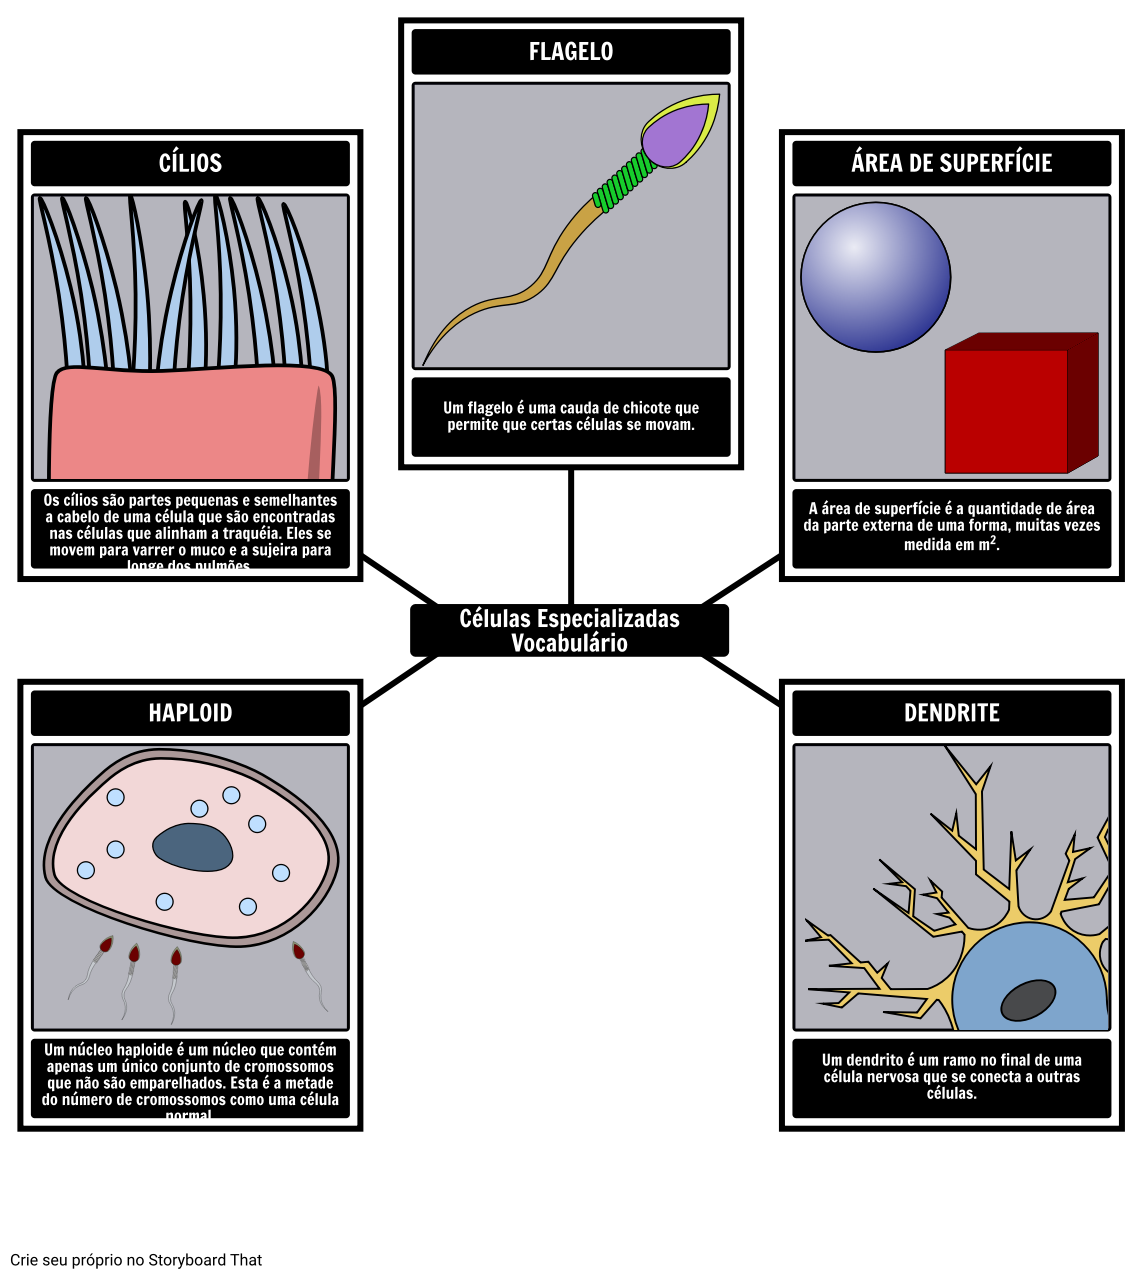 Specialized Cells Exemplo de Vocabulário